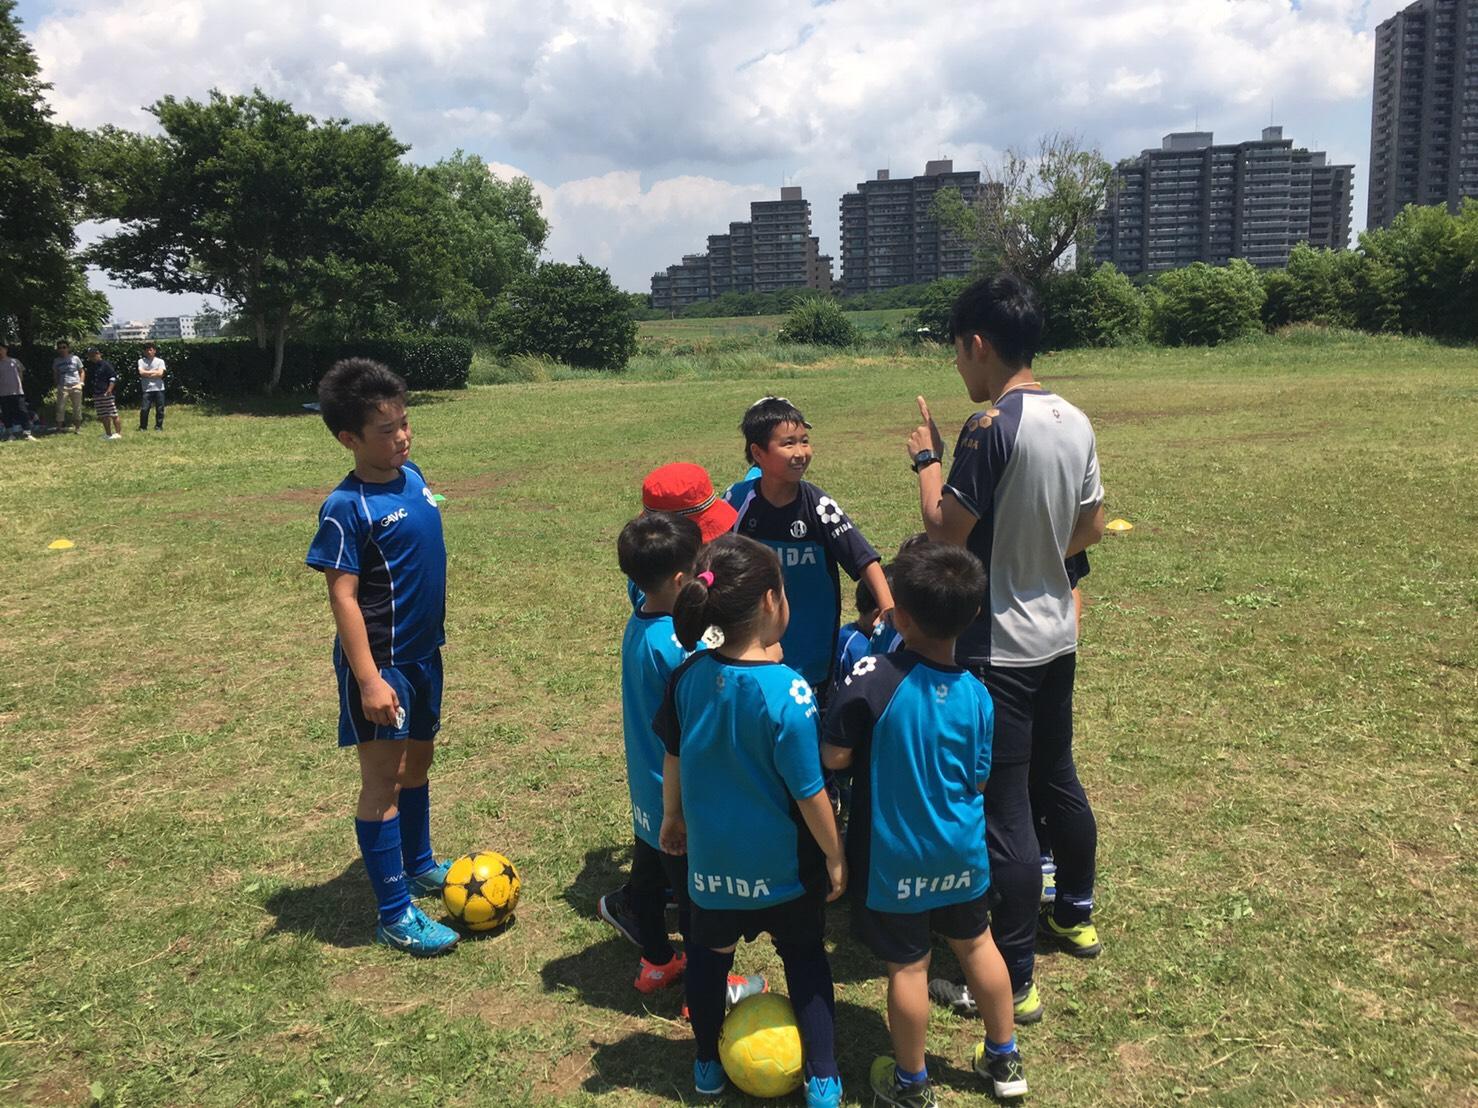 アルバイト 東東京内近郊サッカーインストラクター募集 スポーツ サッカー業界の求人情報 アルバイトを探すならスポキャリ